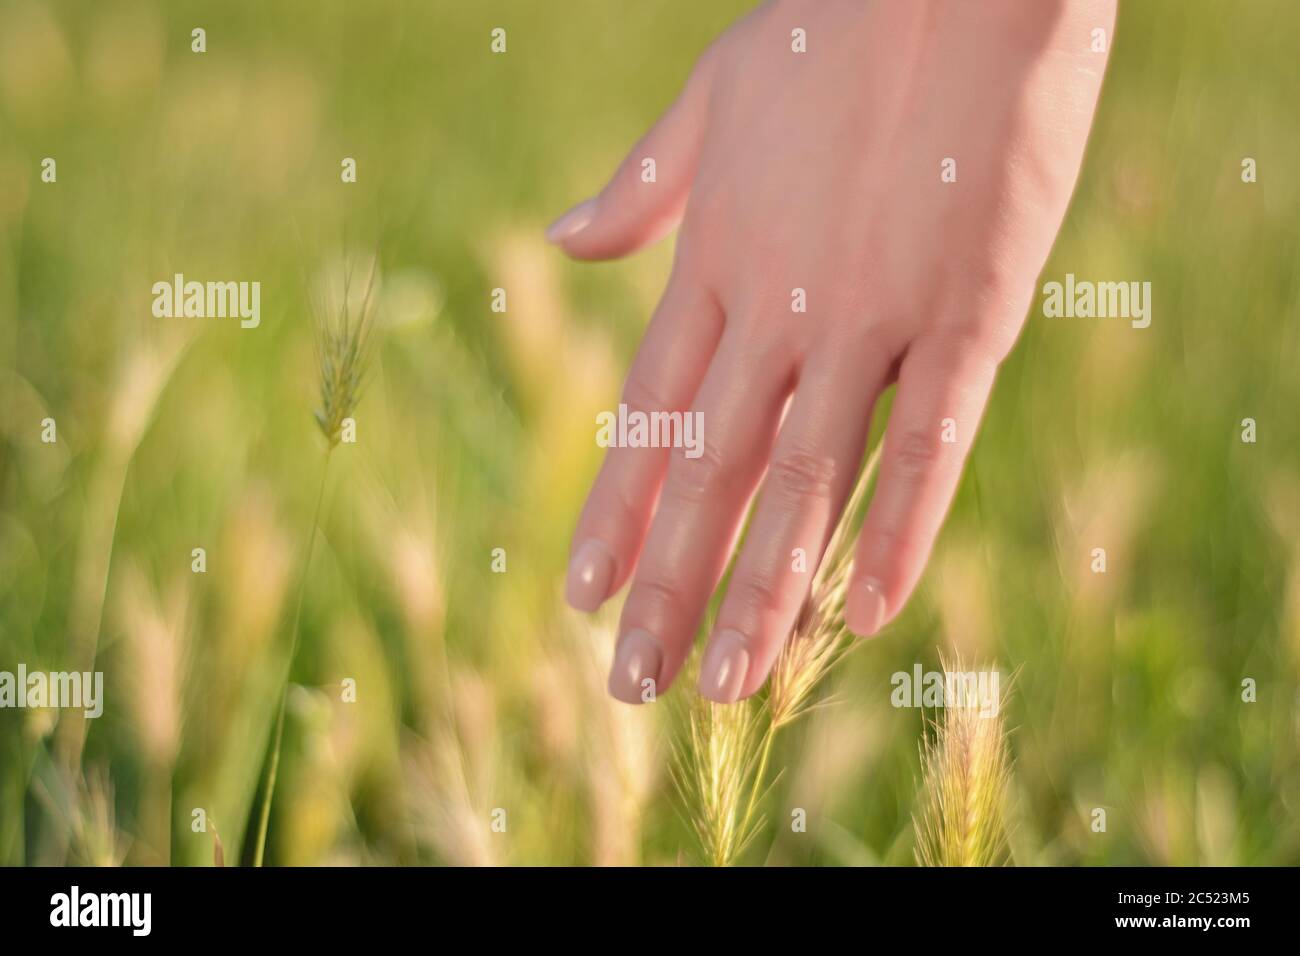 Femme main touchant l'herbe verte dans un champ lors d'une journée ensoleillée d'été. Concept de relaxation dans la nature. Copier l'espace pour la conception ou le texte Banque D'Images